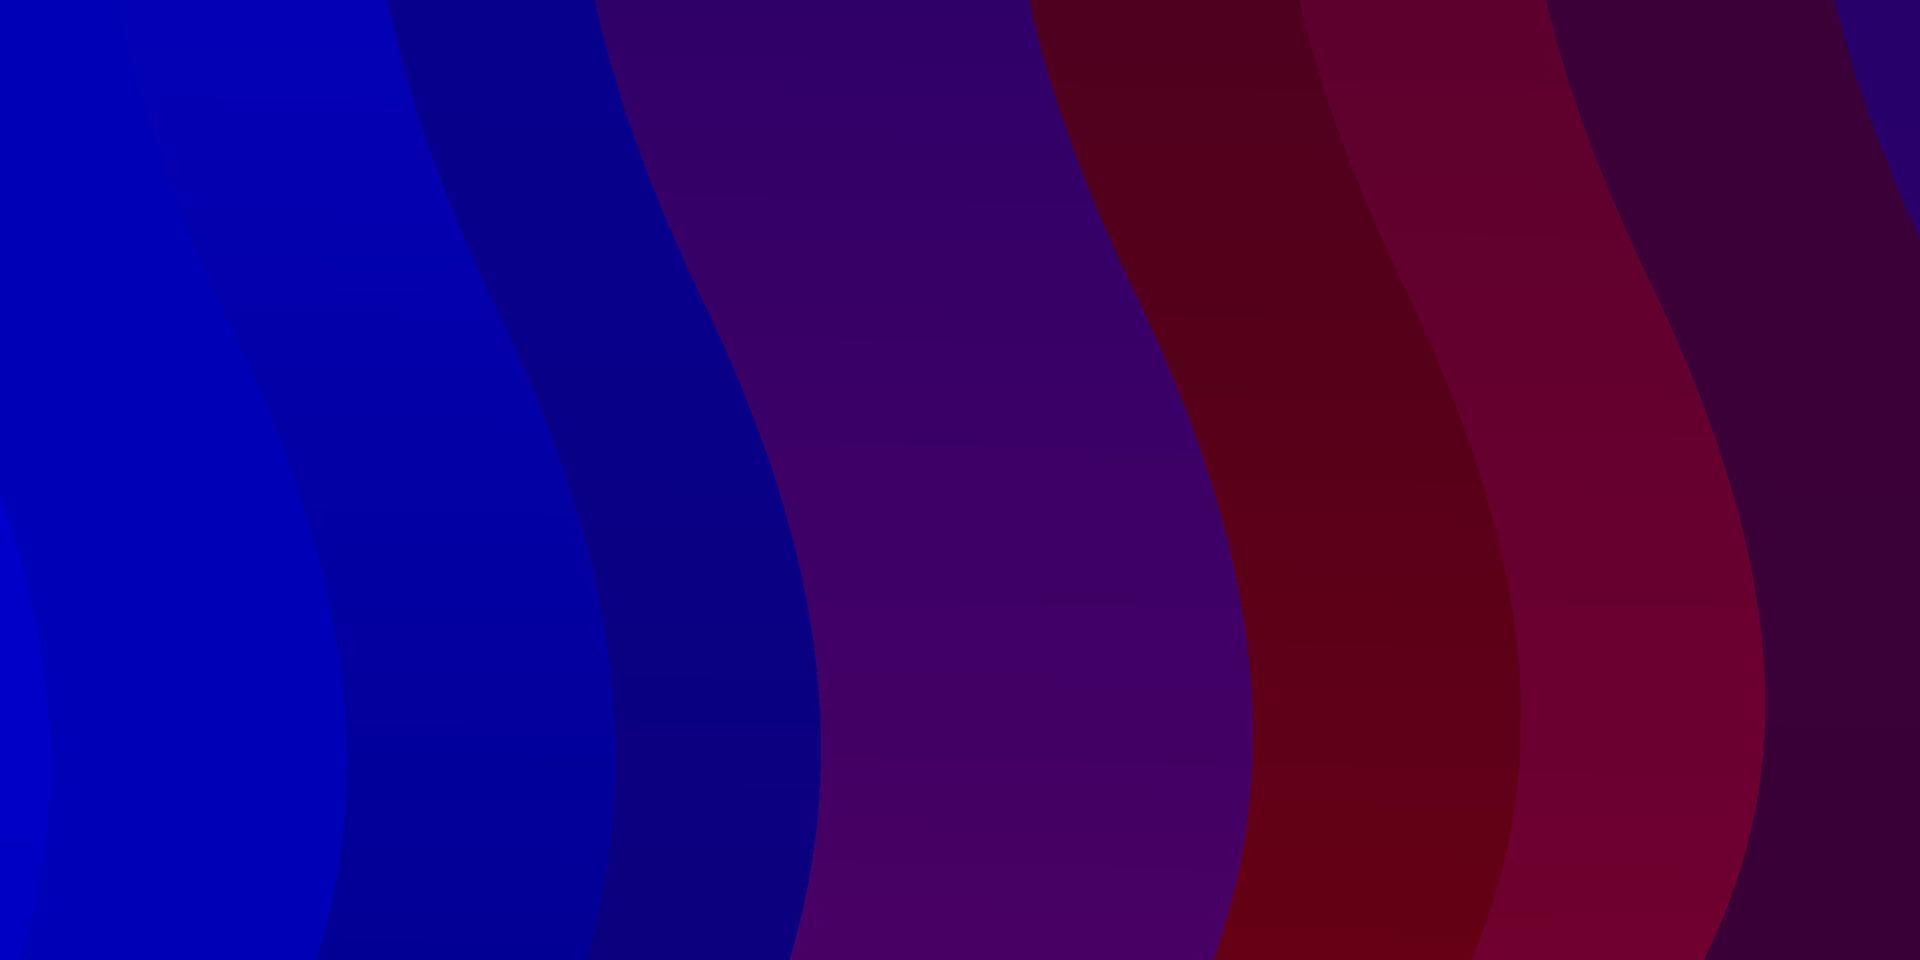 Fondo de vector azul oscuro, rojo con arcos.